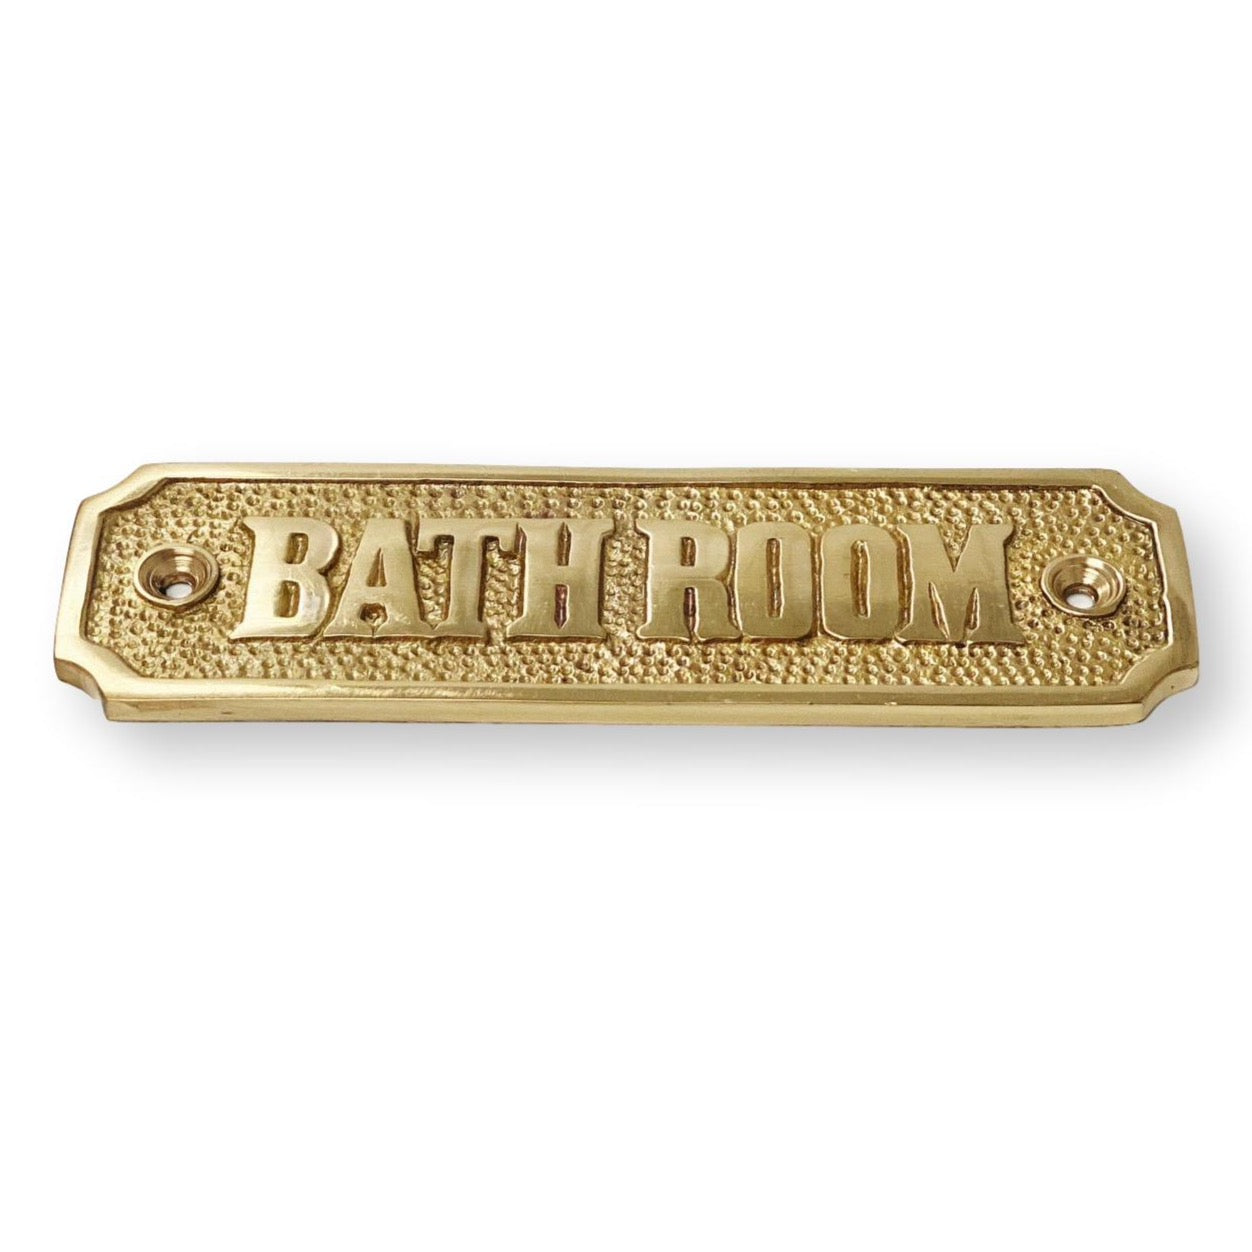 Brass Bathroom Door Sign 4-7/16 x 1-4/16 H - Door Hardware